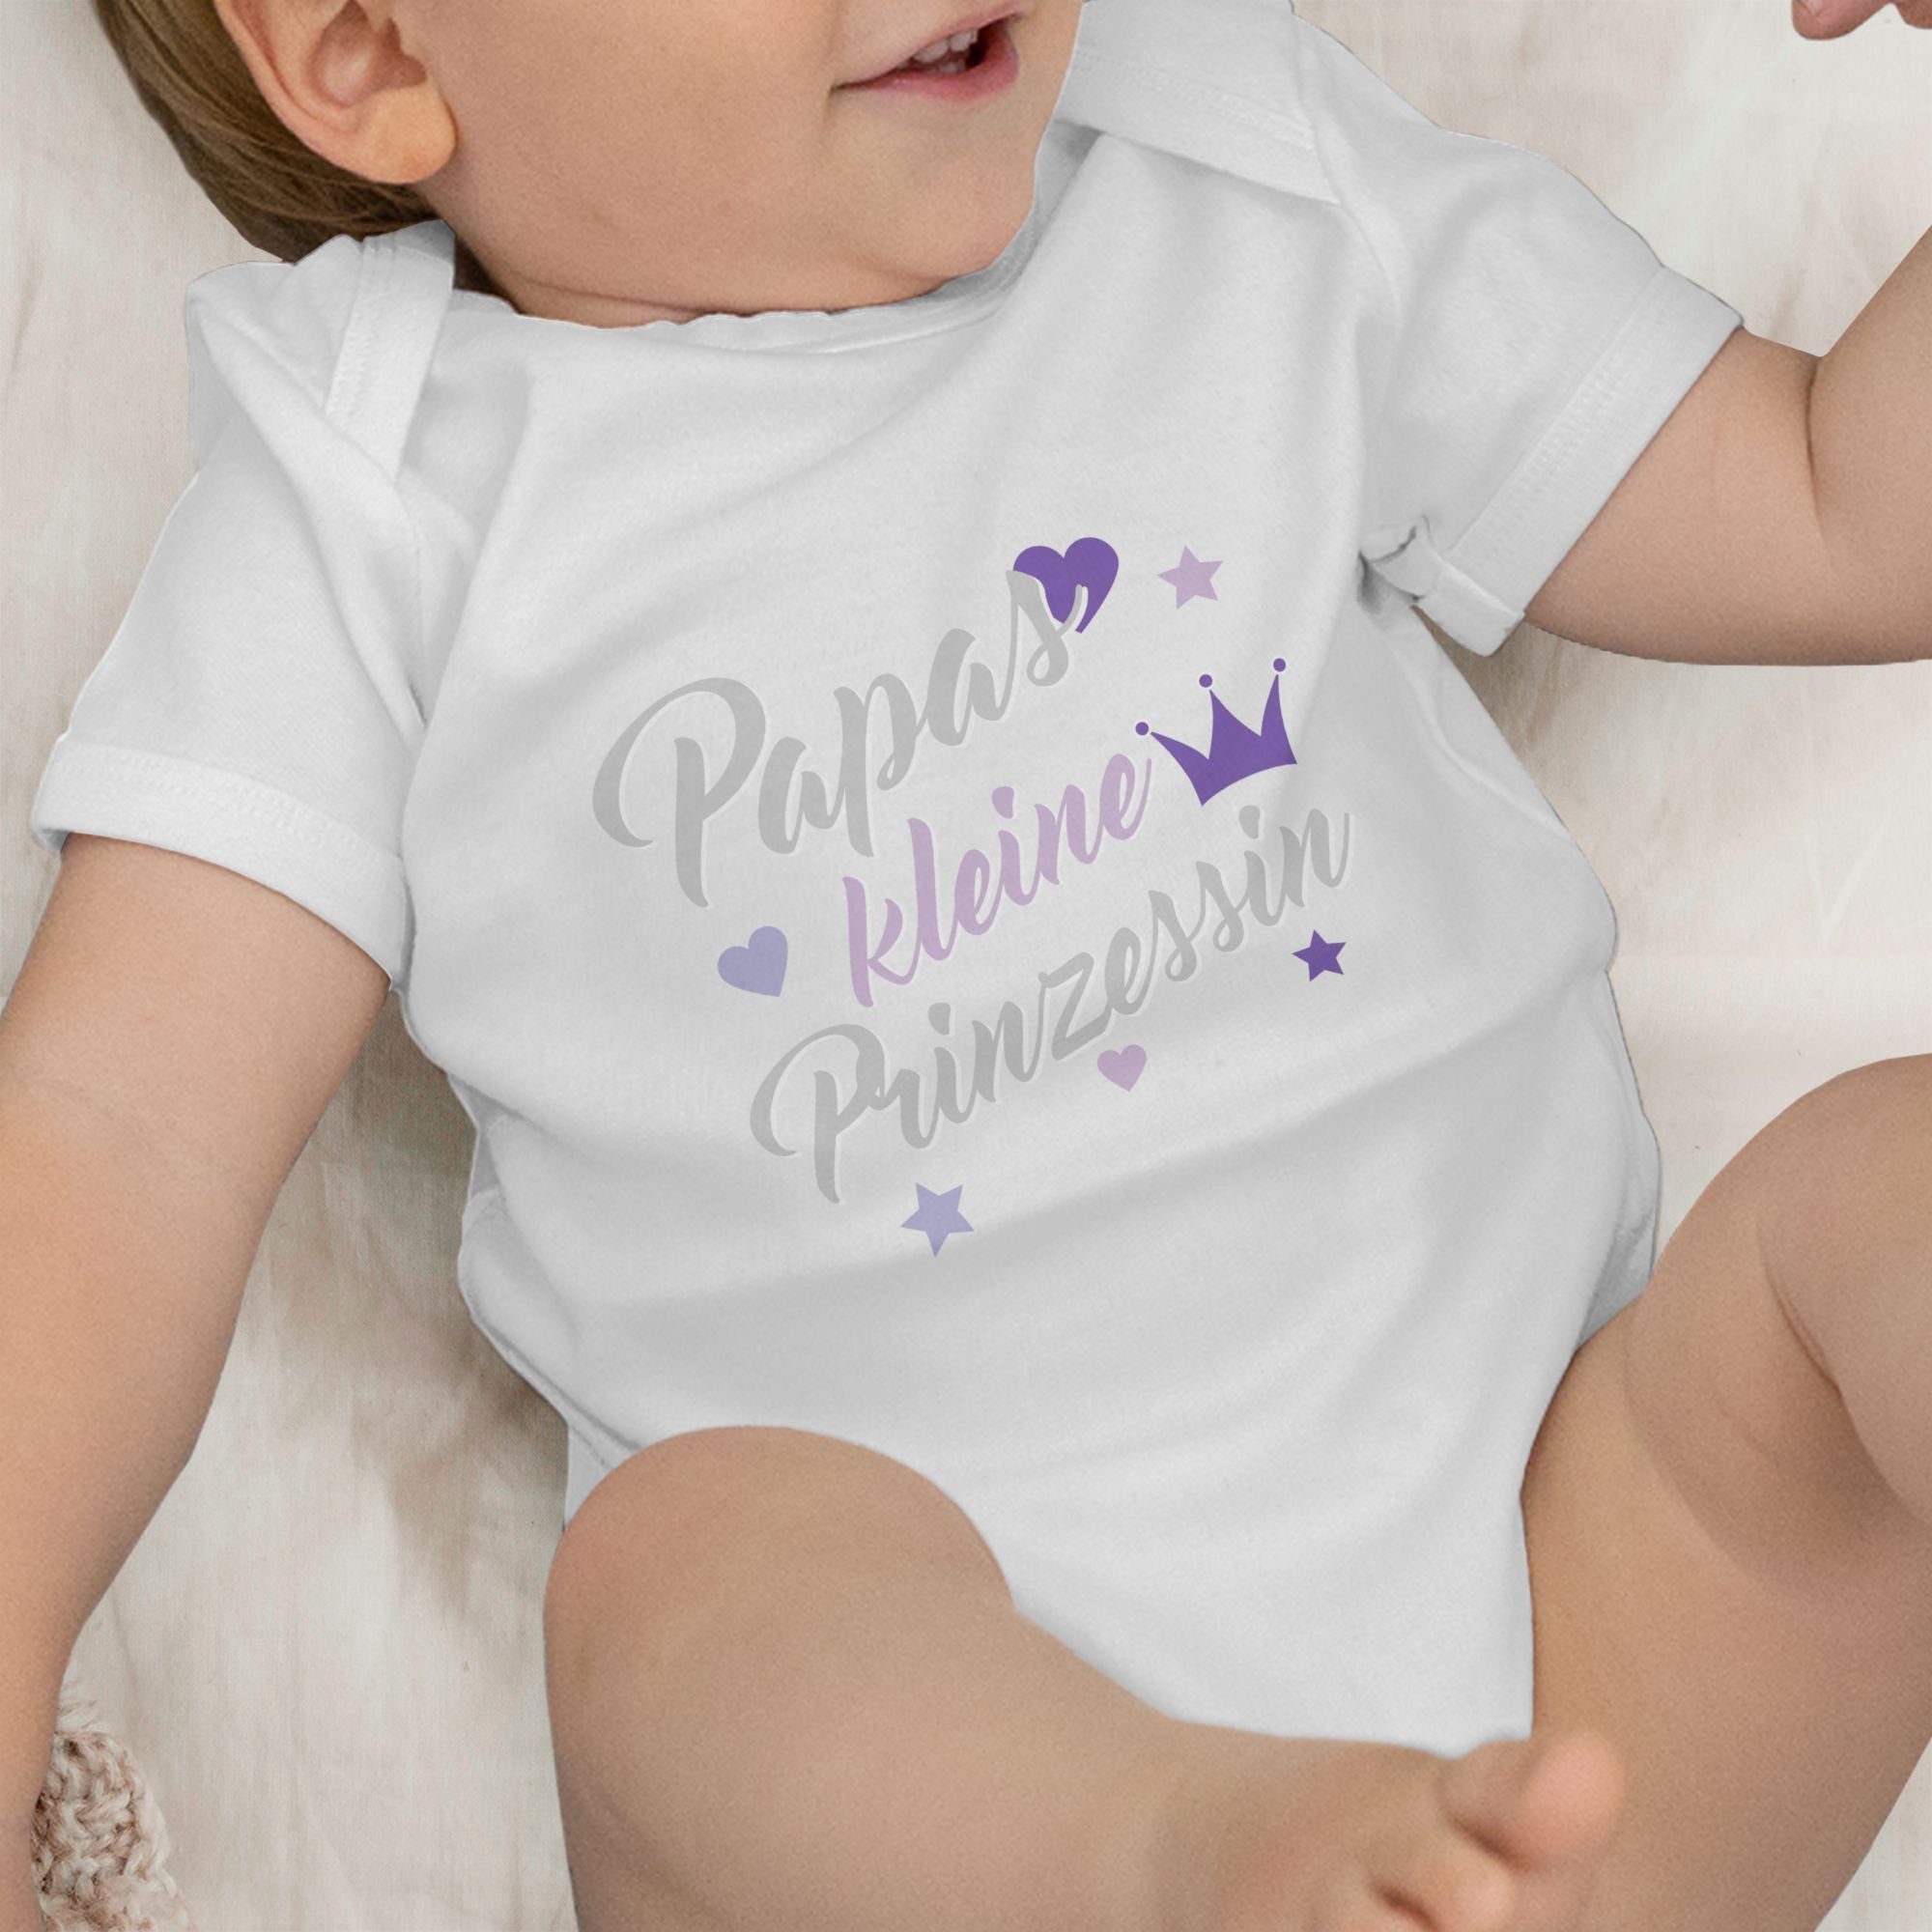 Shirtracer Shirtbody Papas kleine Prinzessin Baby Weiß 1 Vatertag Geschenk